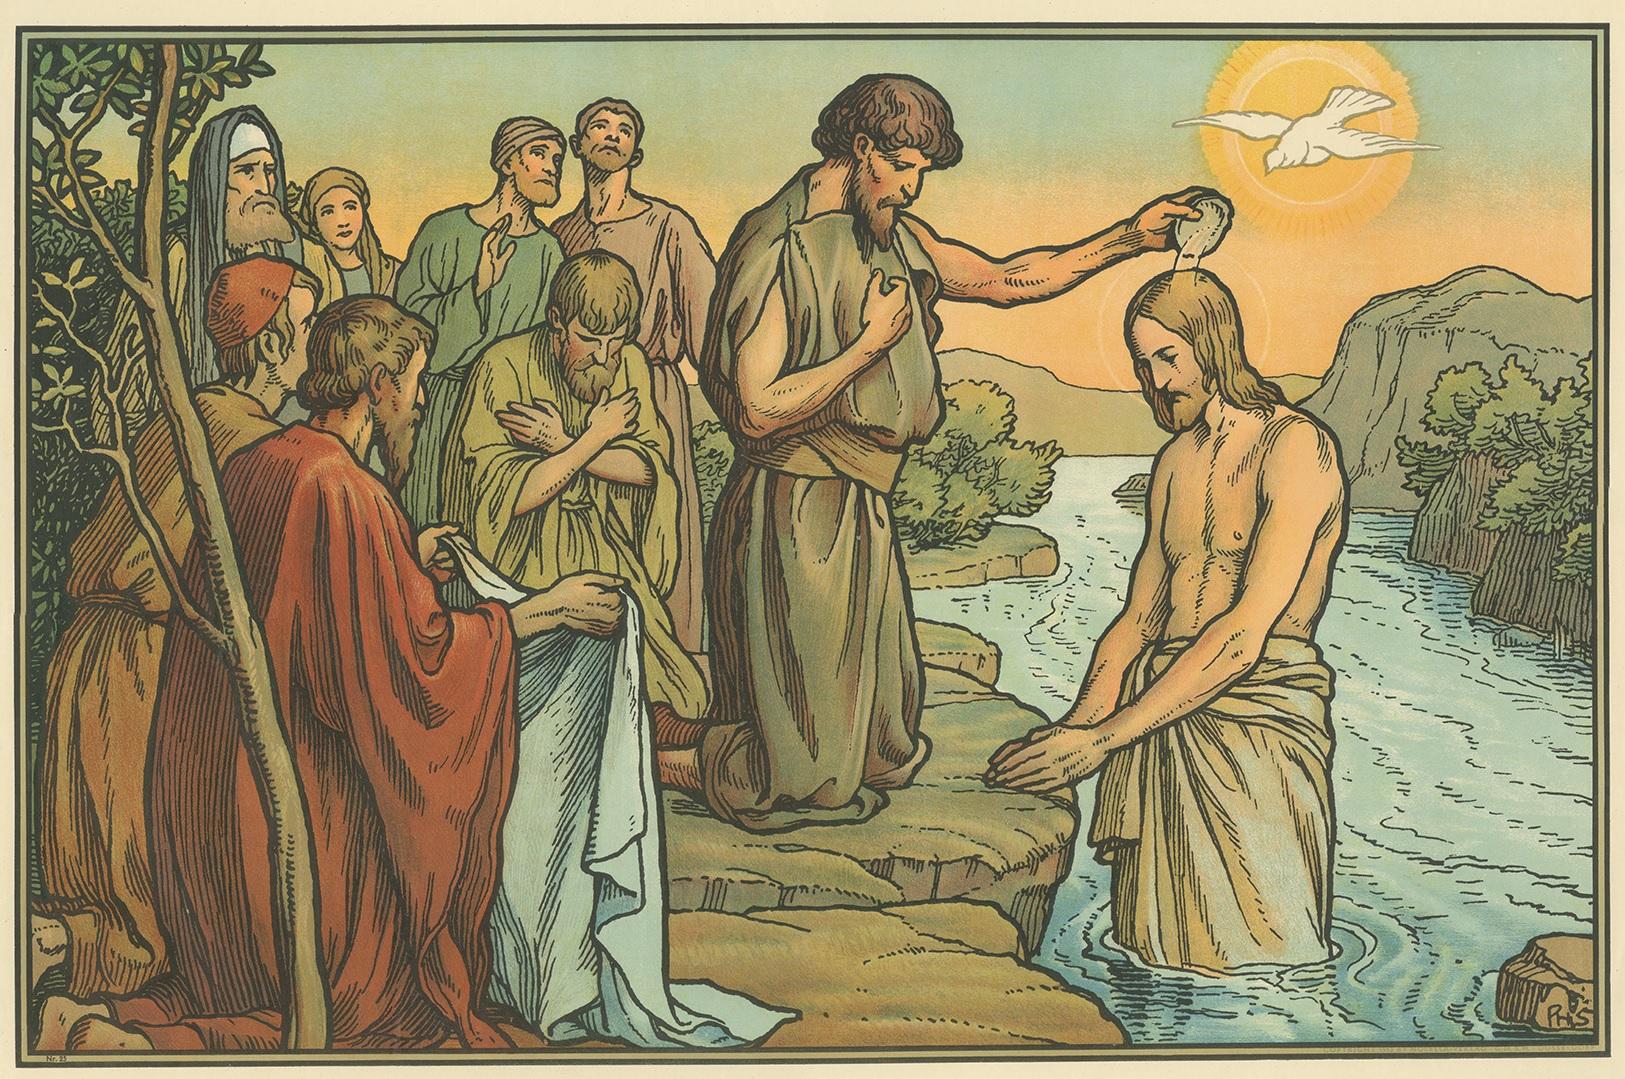 Großer antiker Druck der Taufe von Jesus. Erschienen im Mosella-Verlag, 1913. Dieser Druck stammt aus einer Serie mit dem Titel 